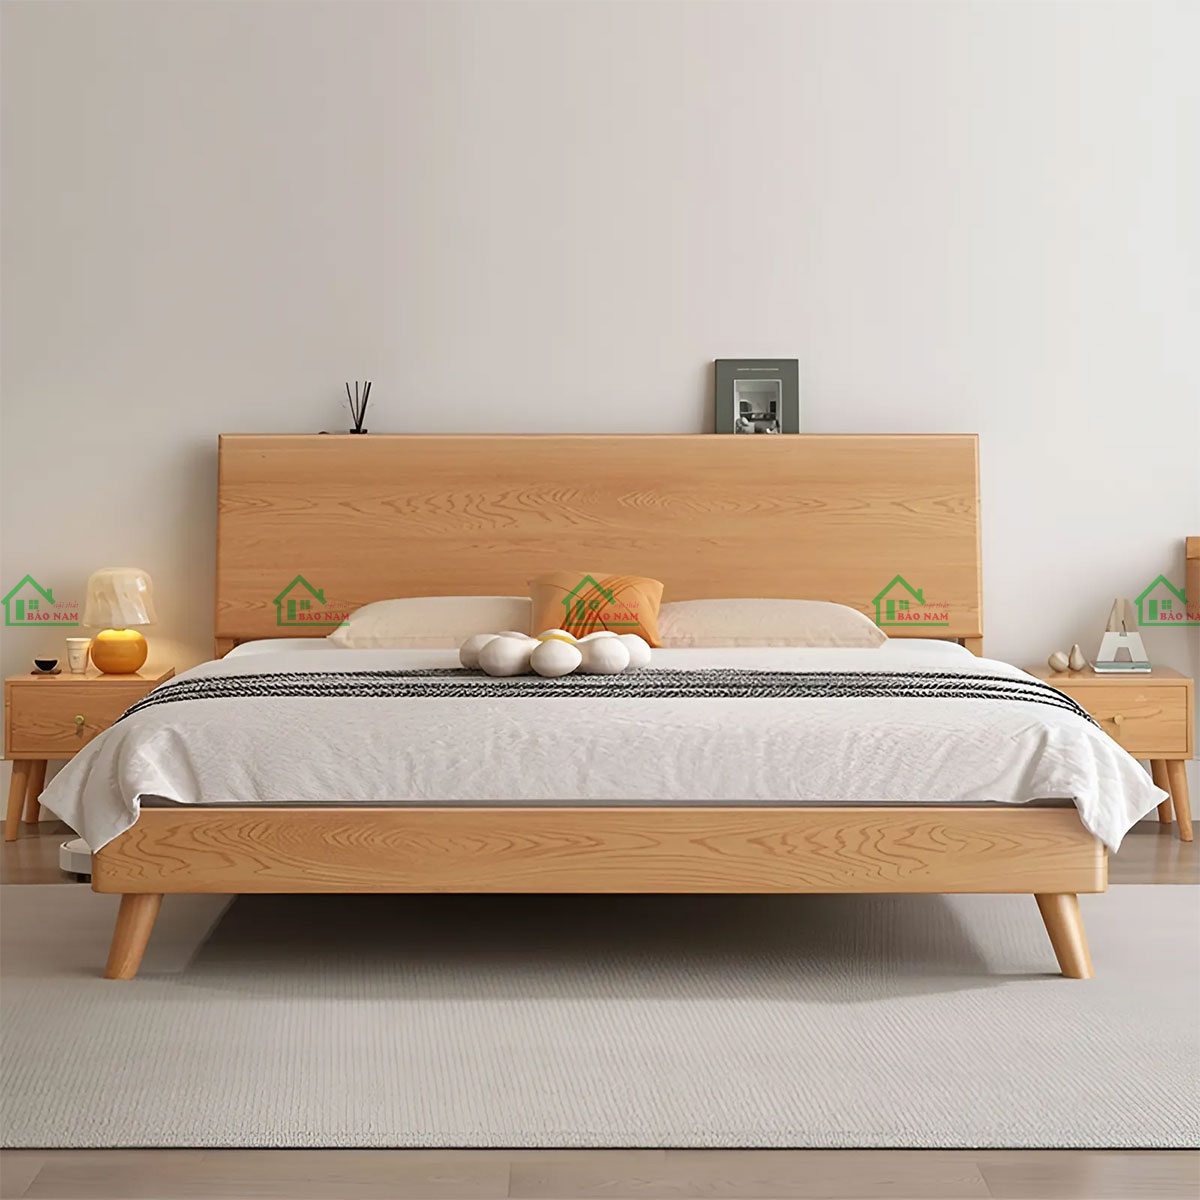 Giường ngủ gỗ đẹp